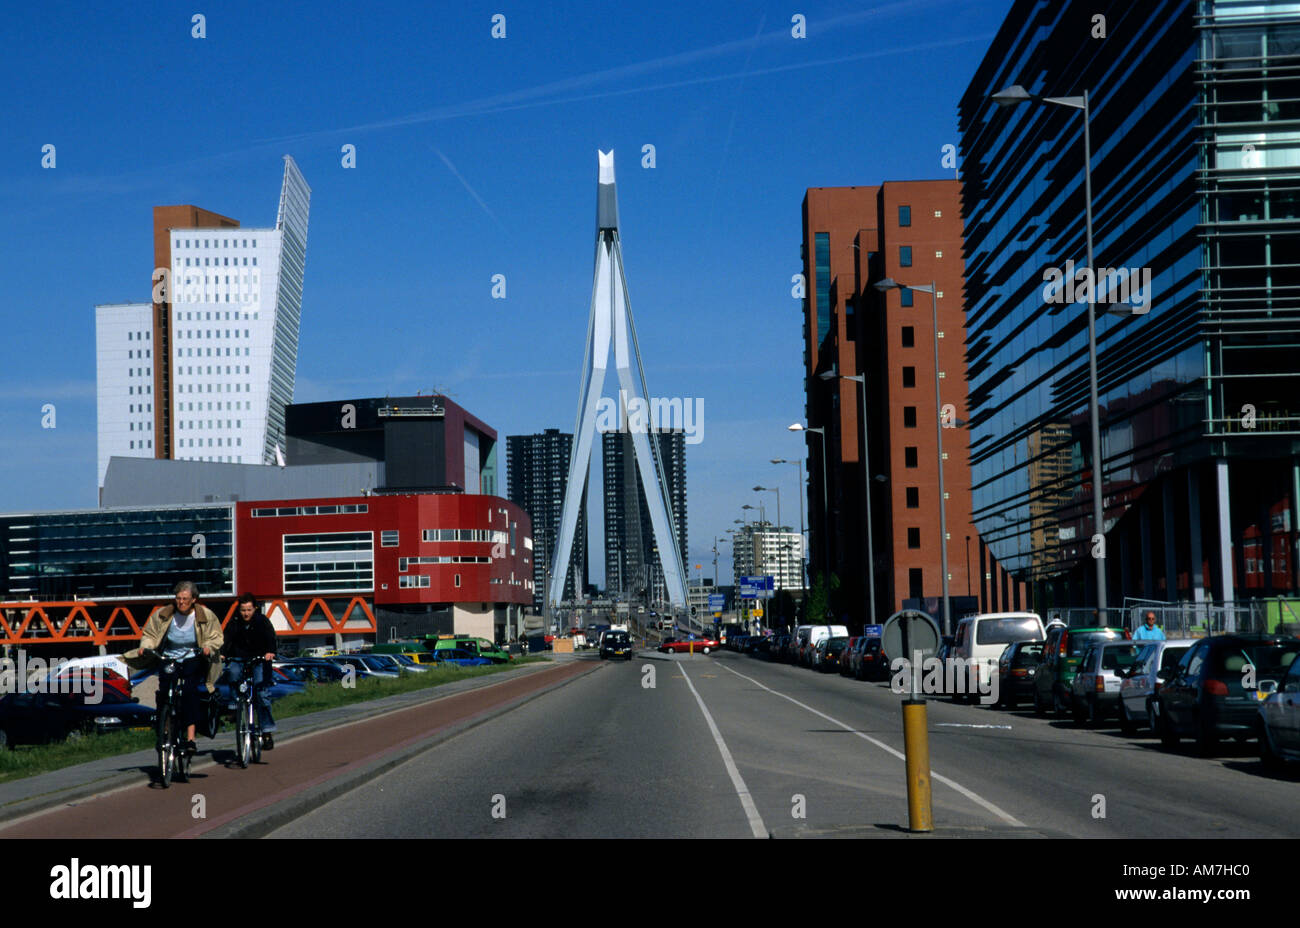 Erasmus bridge Rotterdam Kop van Zuid Netherlands Stock Photo